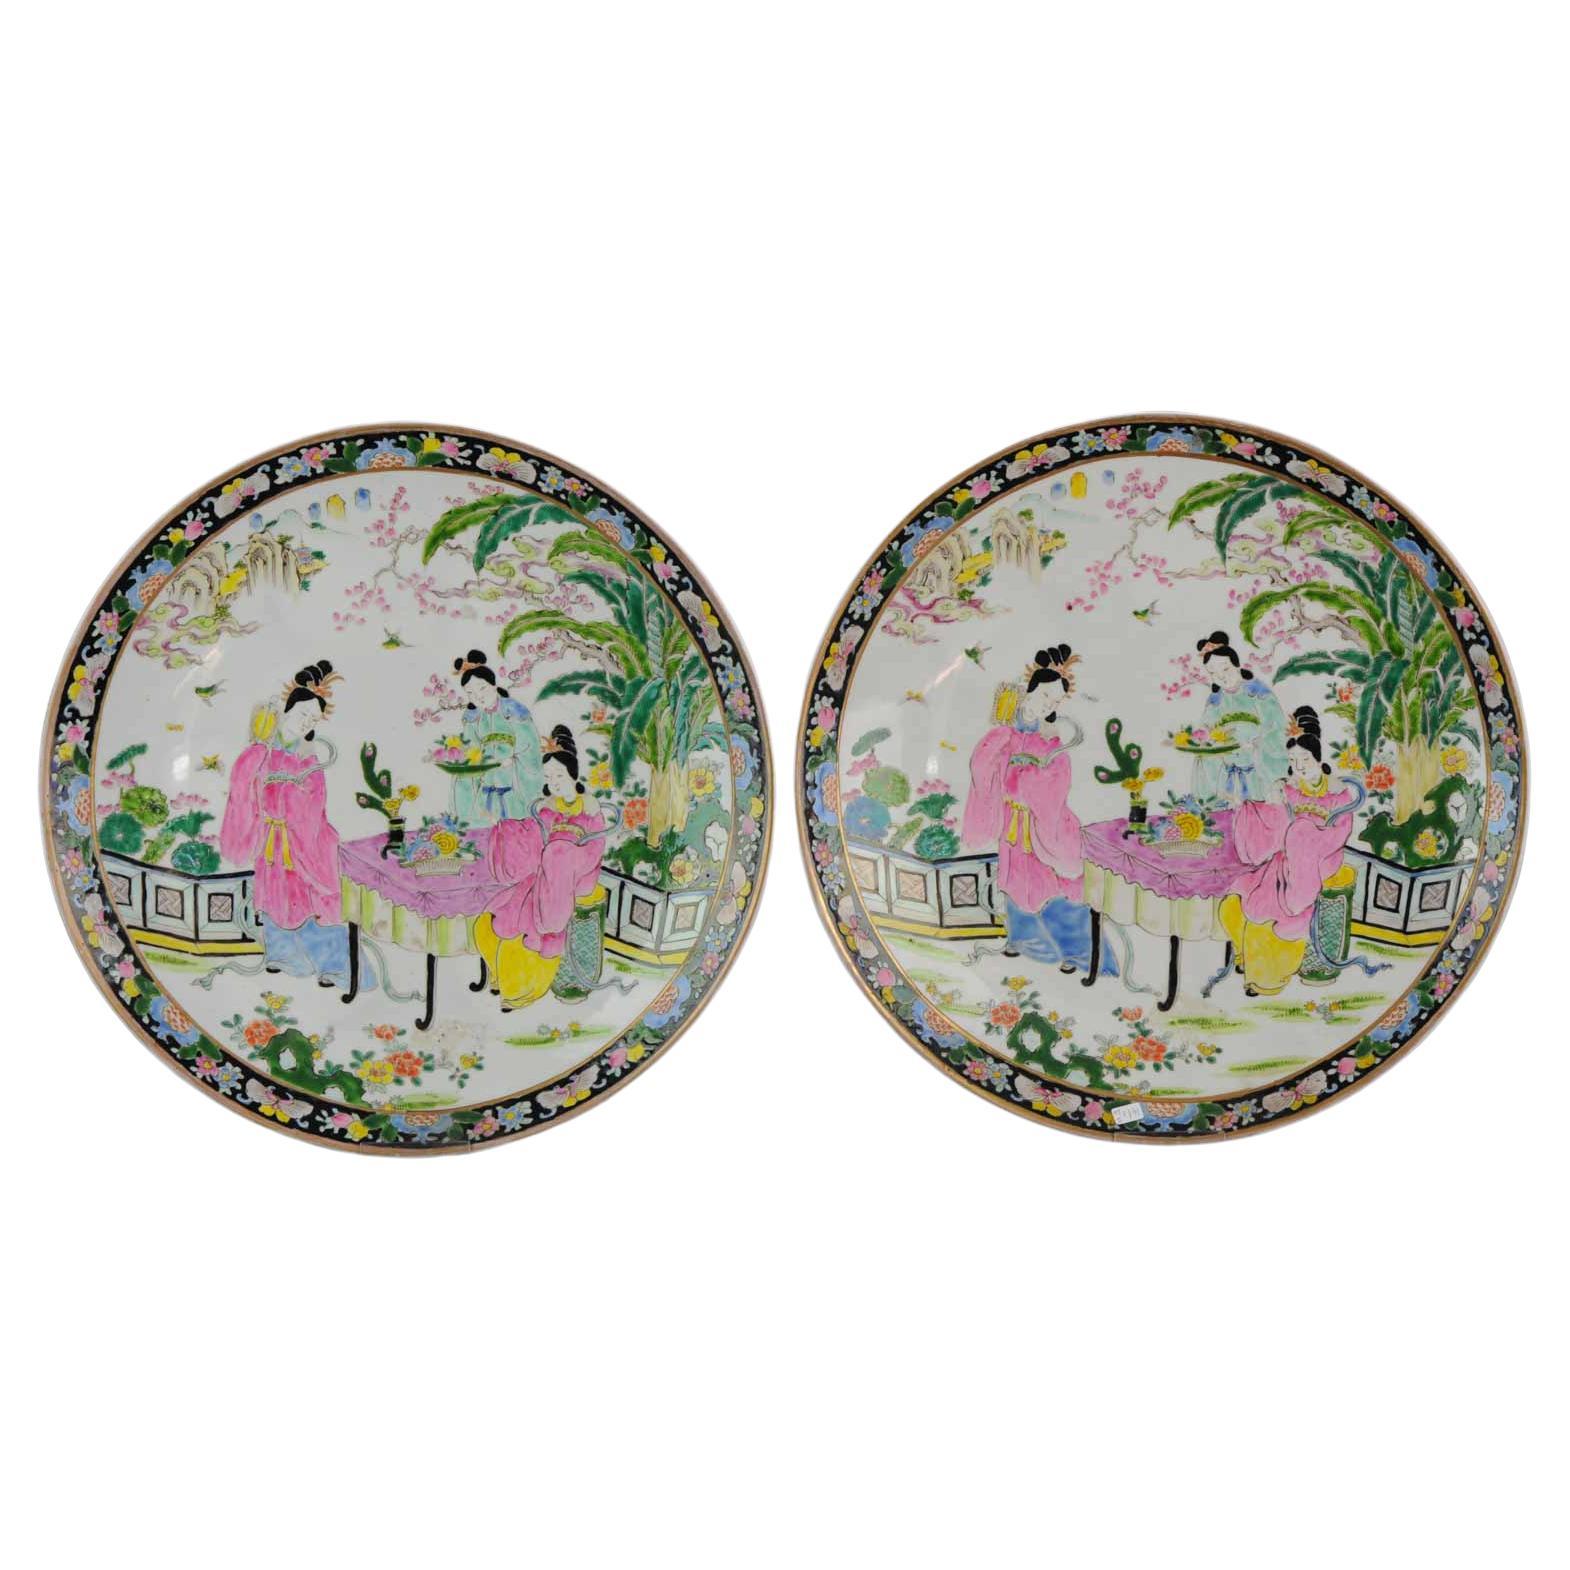 Parfaite paire d'assiettes de service en porcelaine japonaise marquée, vers 1900